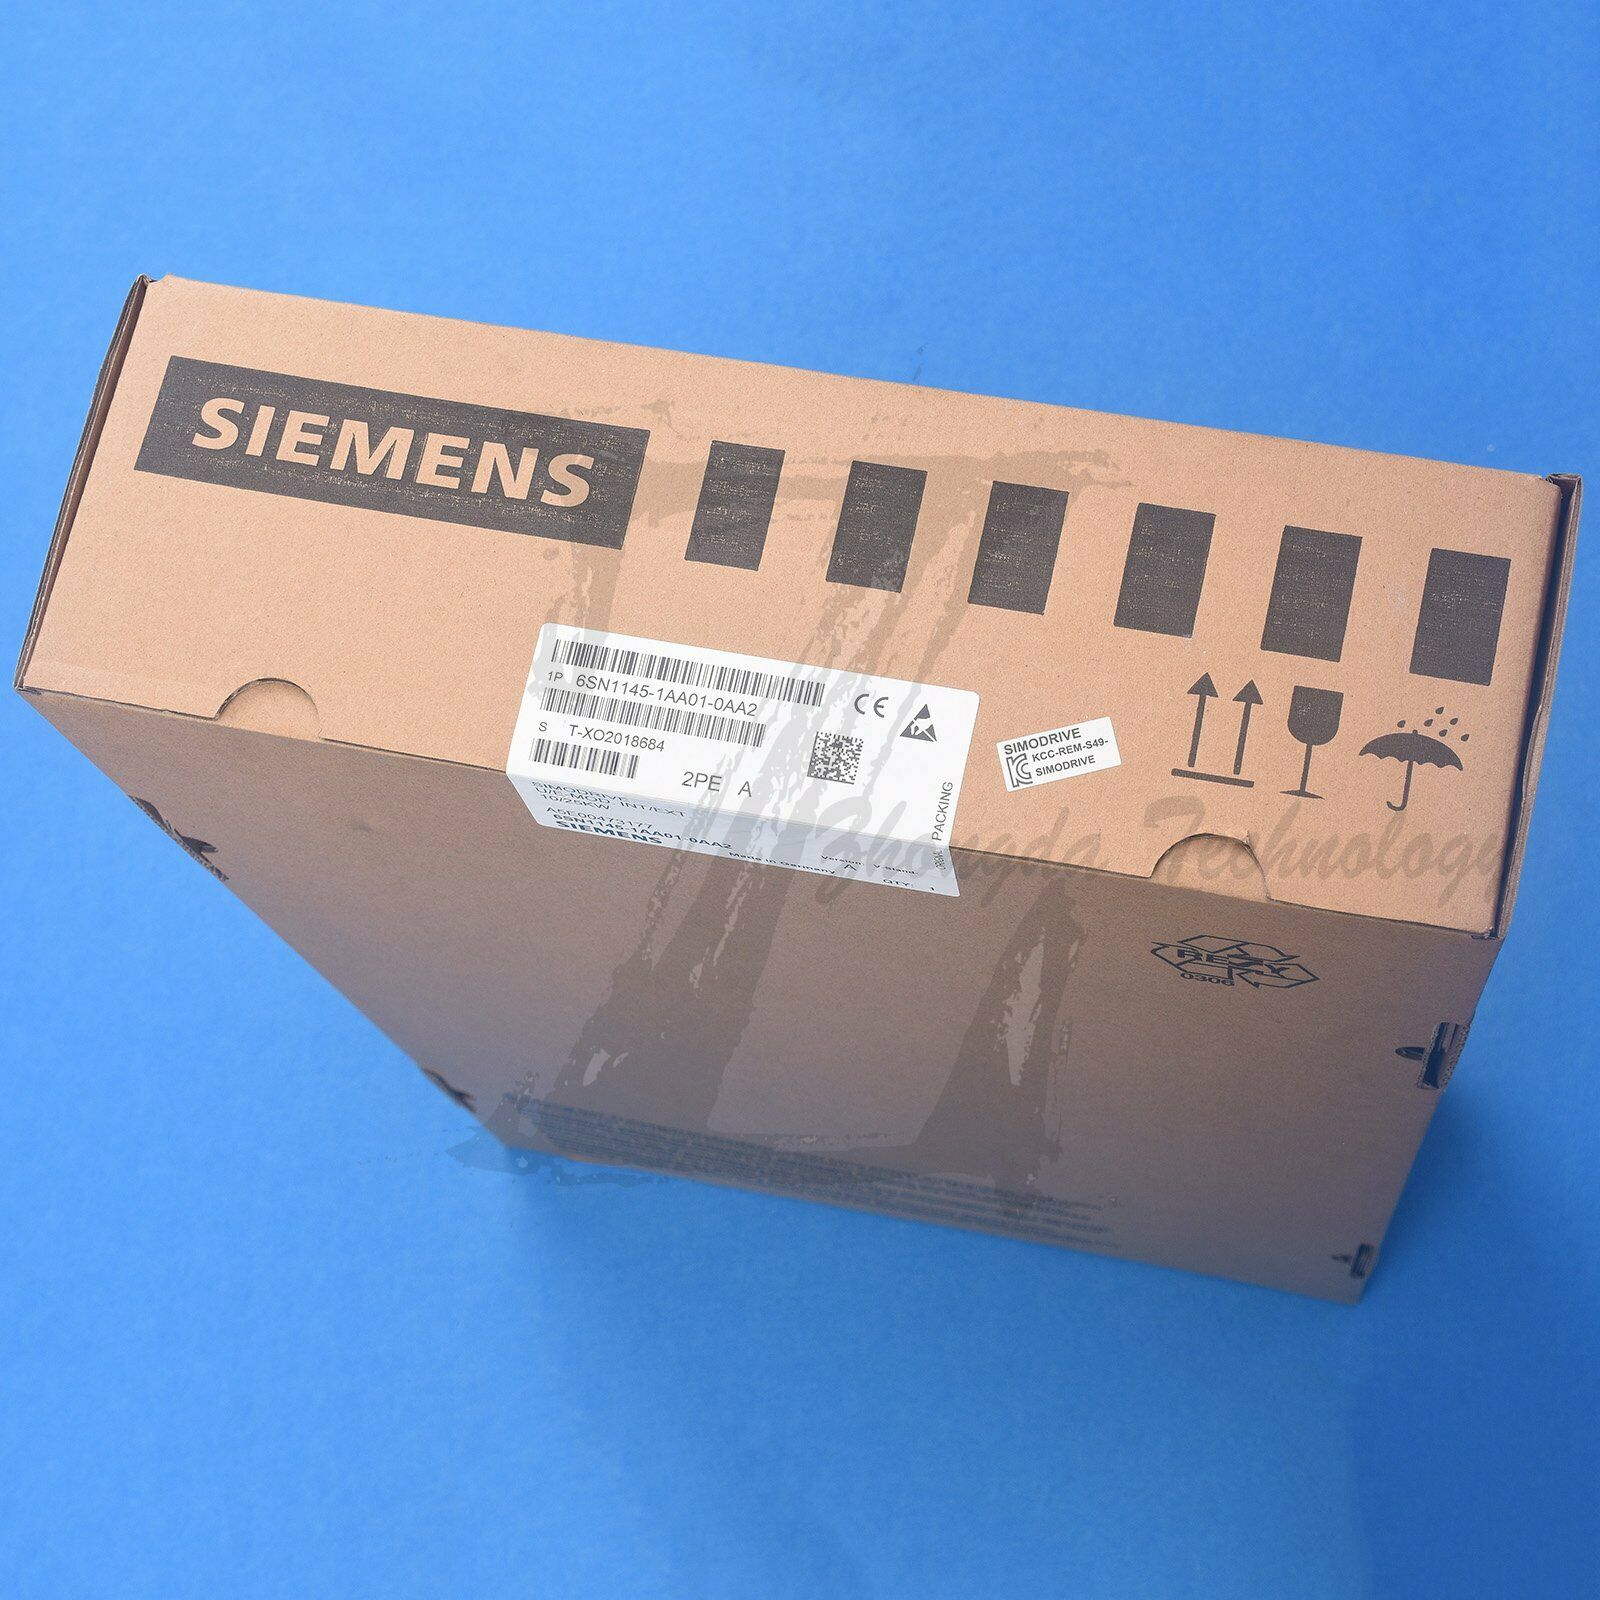 New Siemens 611 10/25KW power module 6SN1145-1AA01-0AA